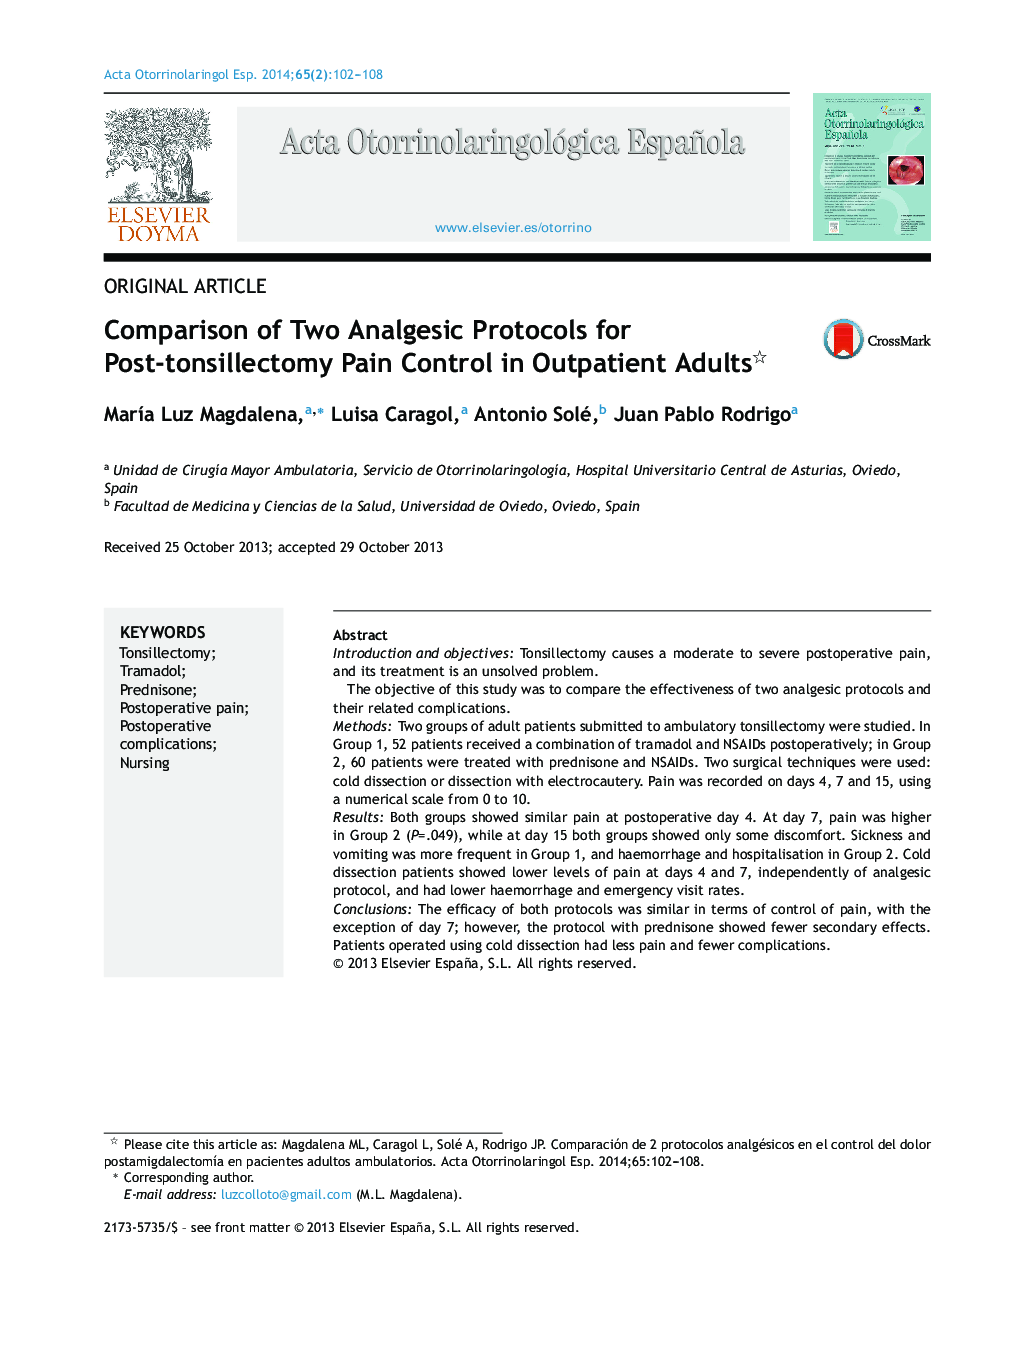 مقایسه دو پروتکل ضددردی برای کنترل درد پس از تنسیلکتومی در بزرگسالان سرپایی 